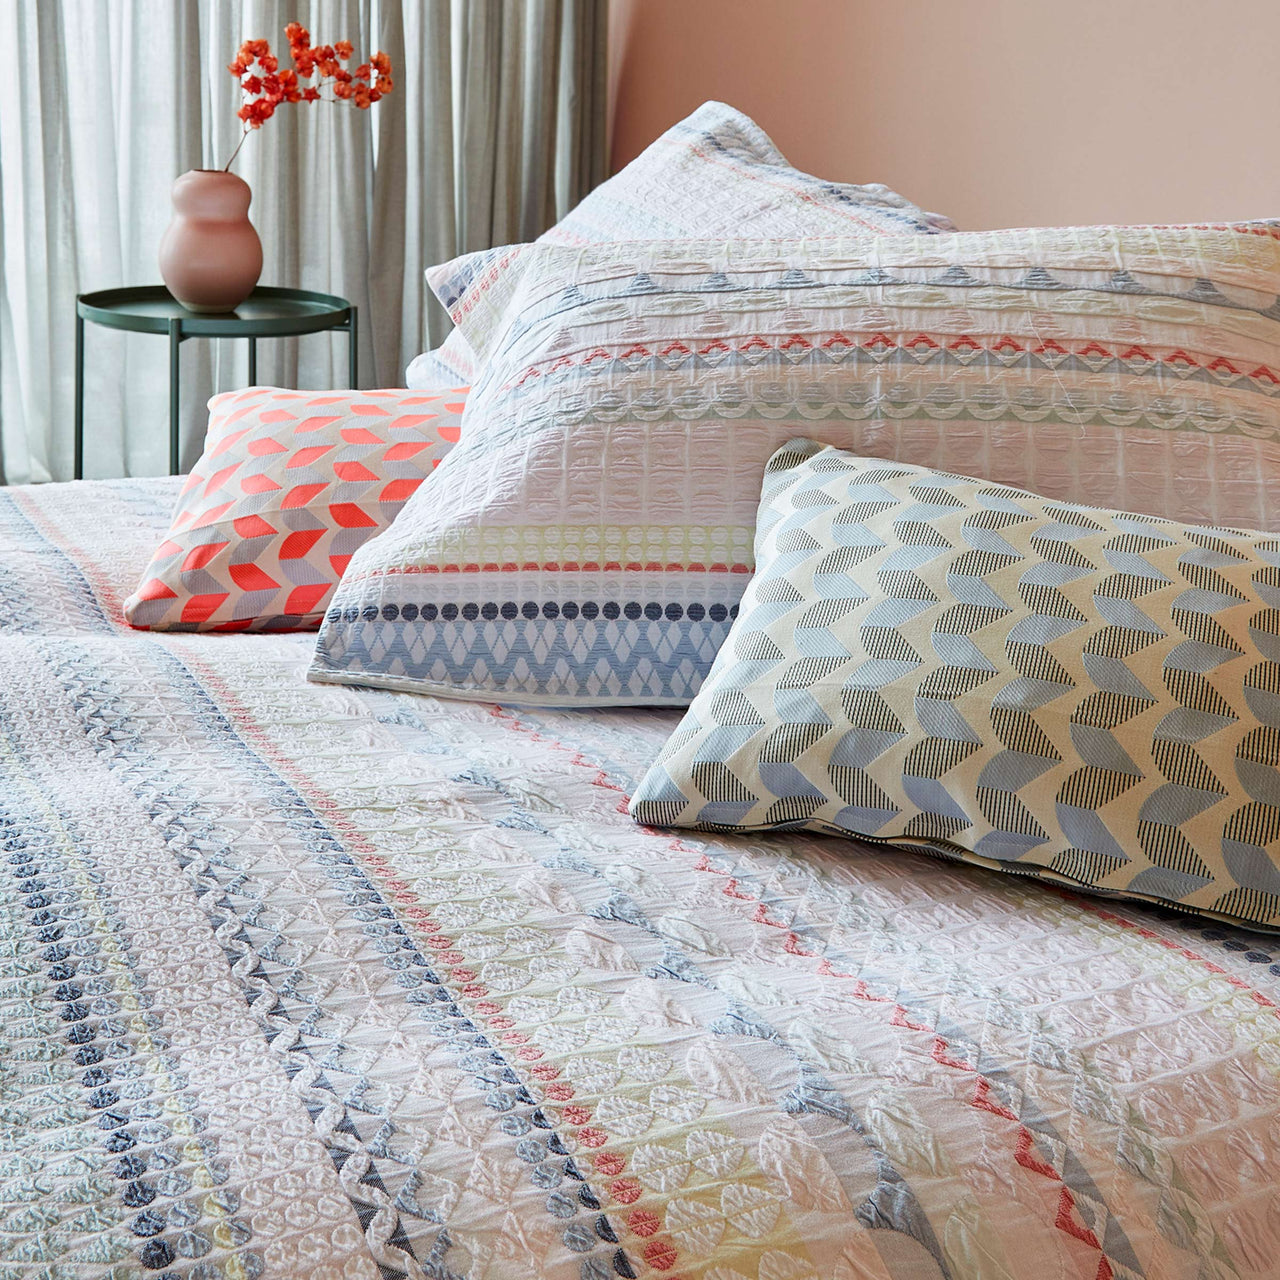 geometric bed linen, colourful bed linen, designer bed linen, luxury bed linen, quality bedlinen, red bedlinen, cotton bedlinen, pink bedlinen, white bedlinen, neutral bedlinen